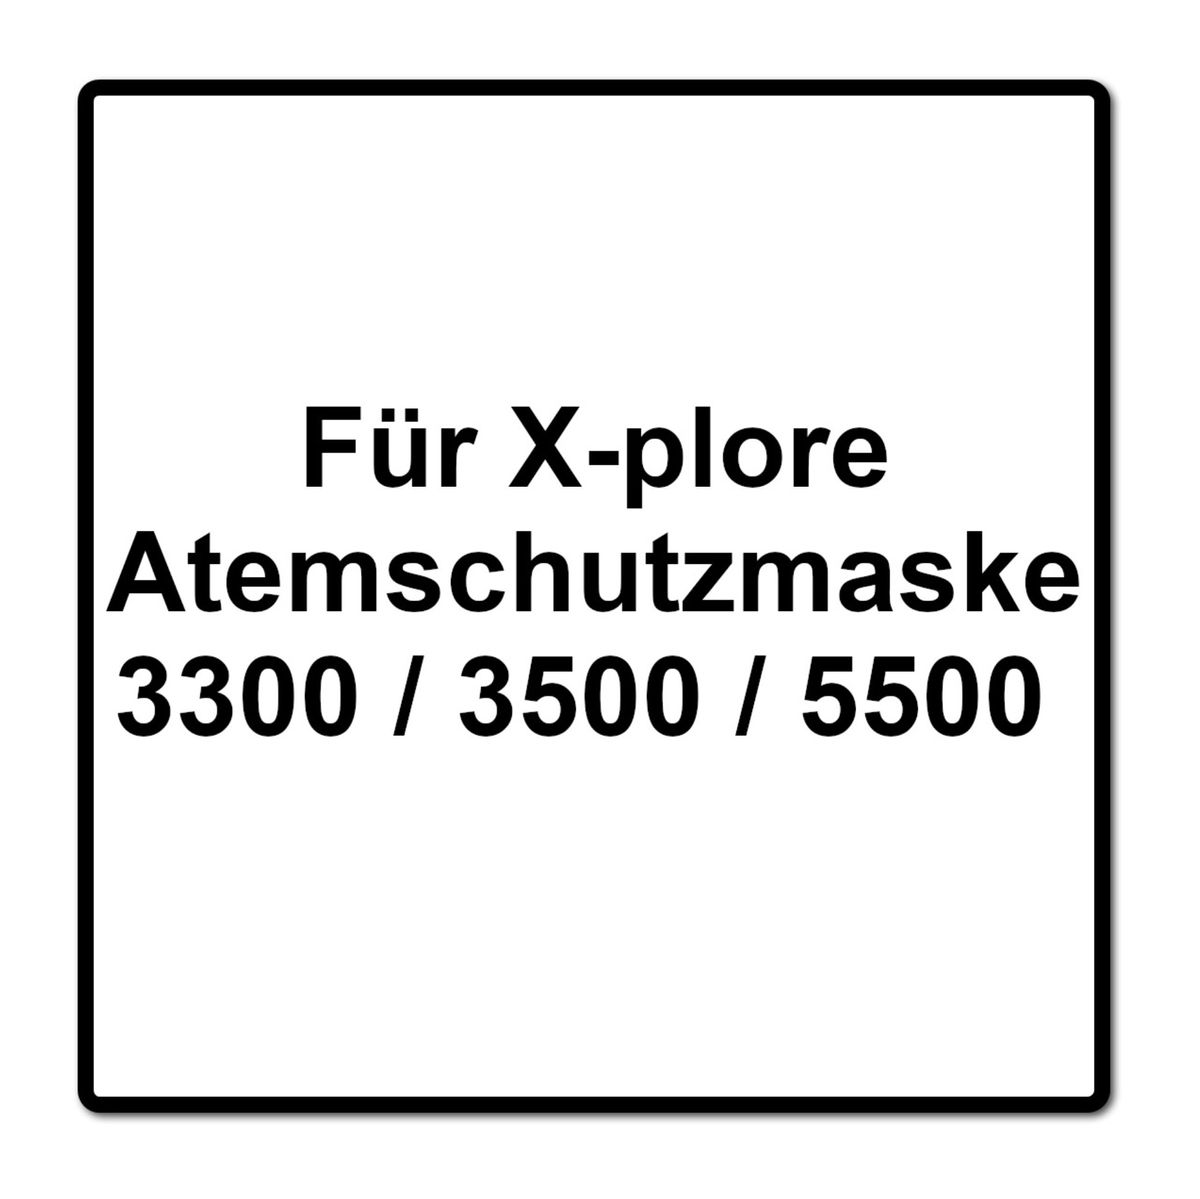 Dräger X-plore Set: Filtres combinés à baïonnette pour X-plore 3300 / 3500 / 5500 ( A1B1E1K1 Hg P3 R D ), 14 pcs. ( 7x 6738817 )